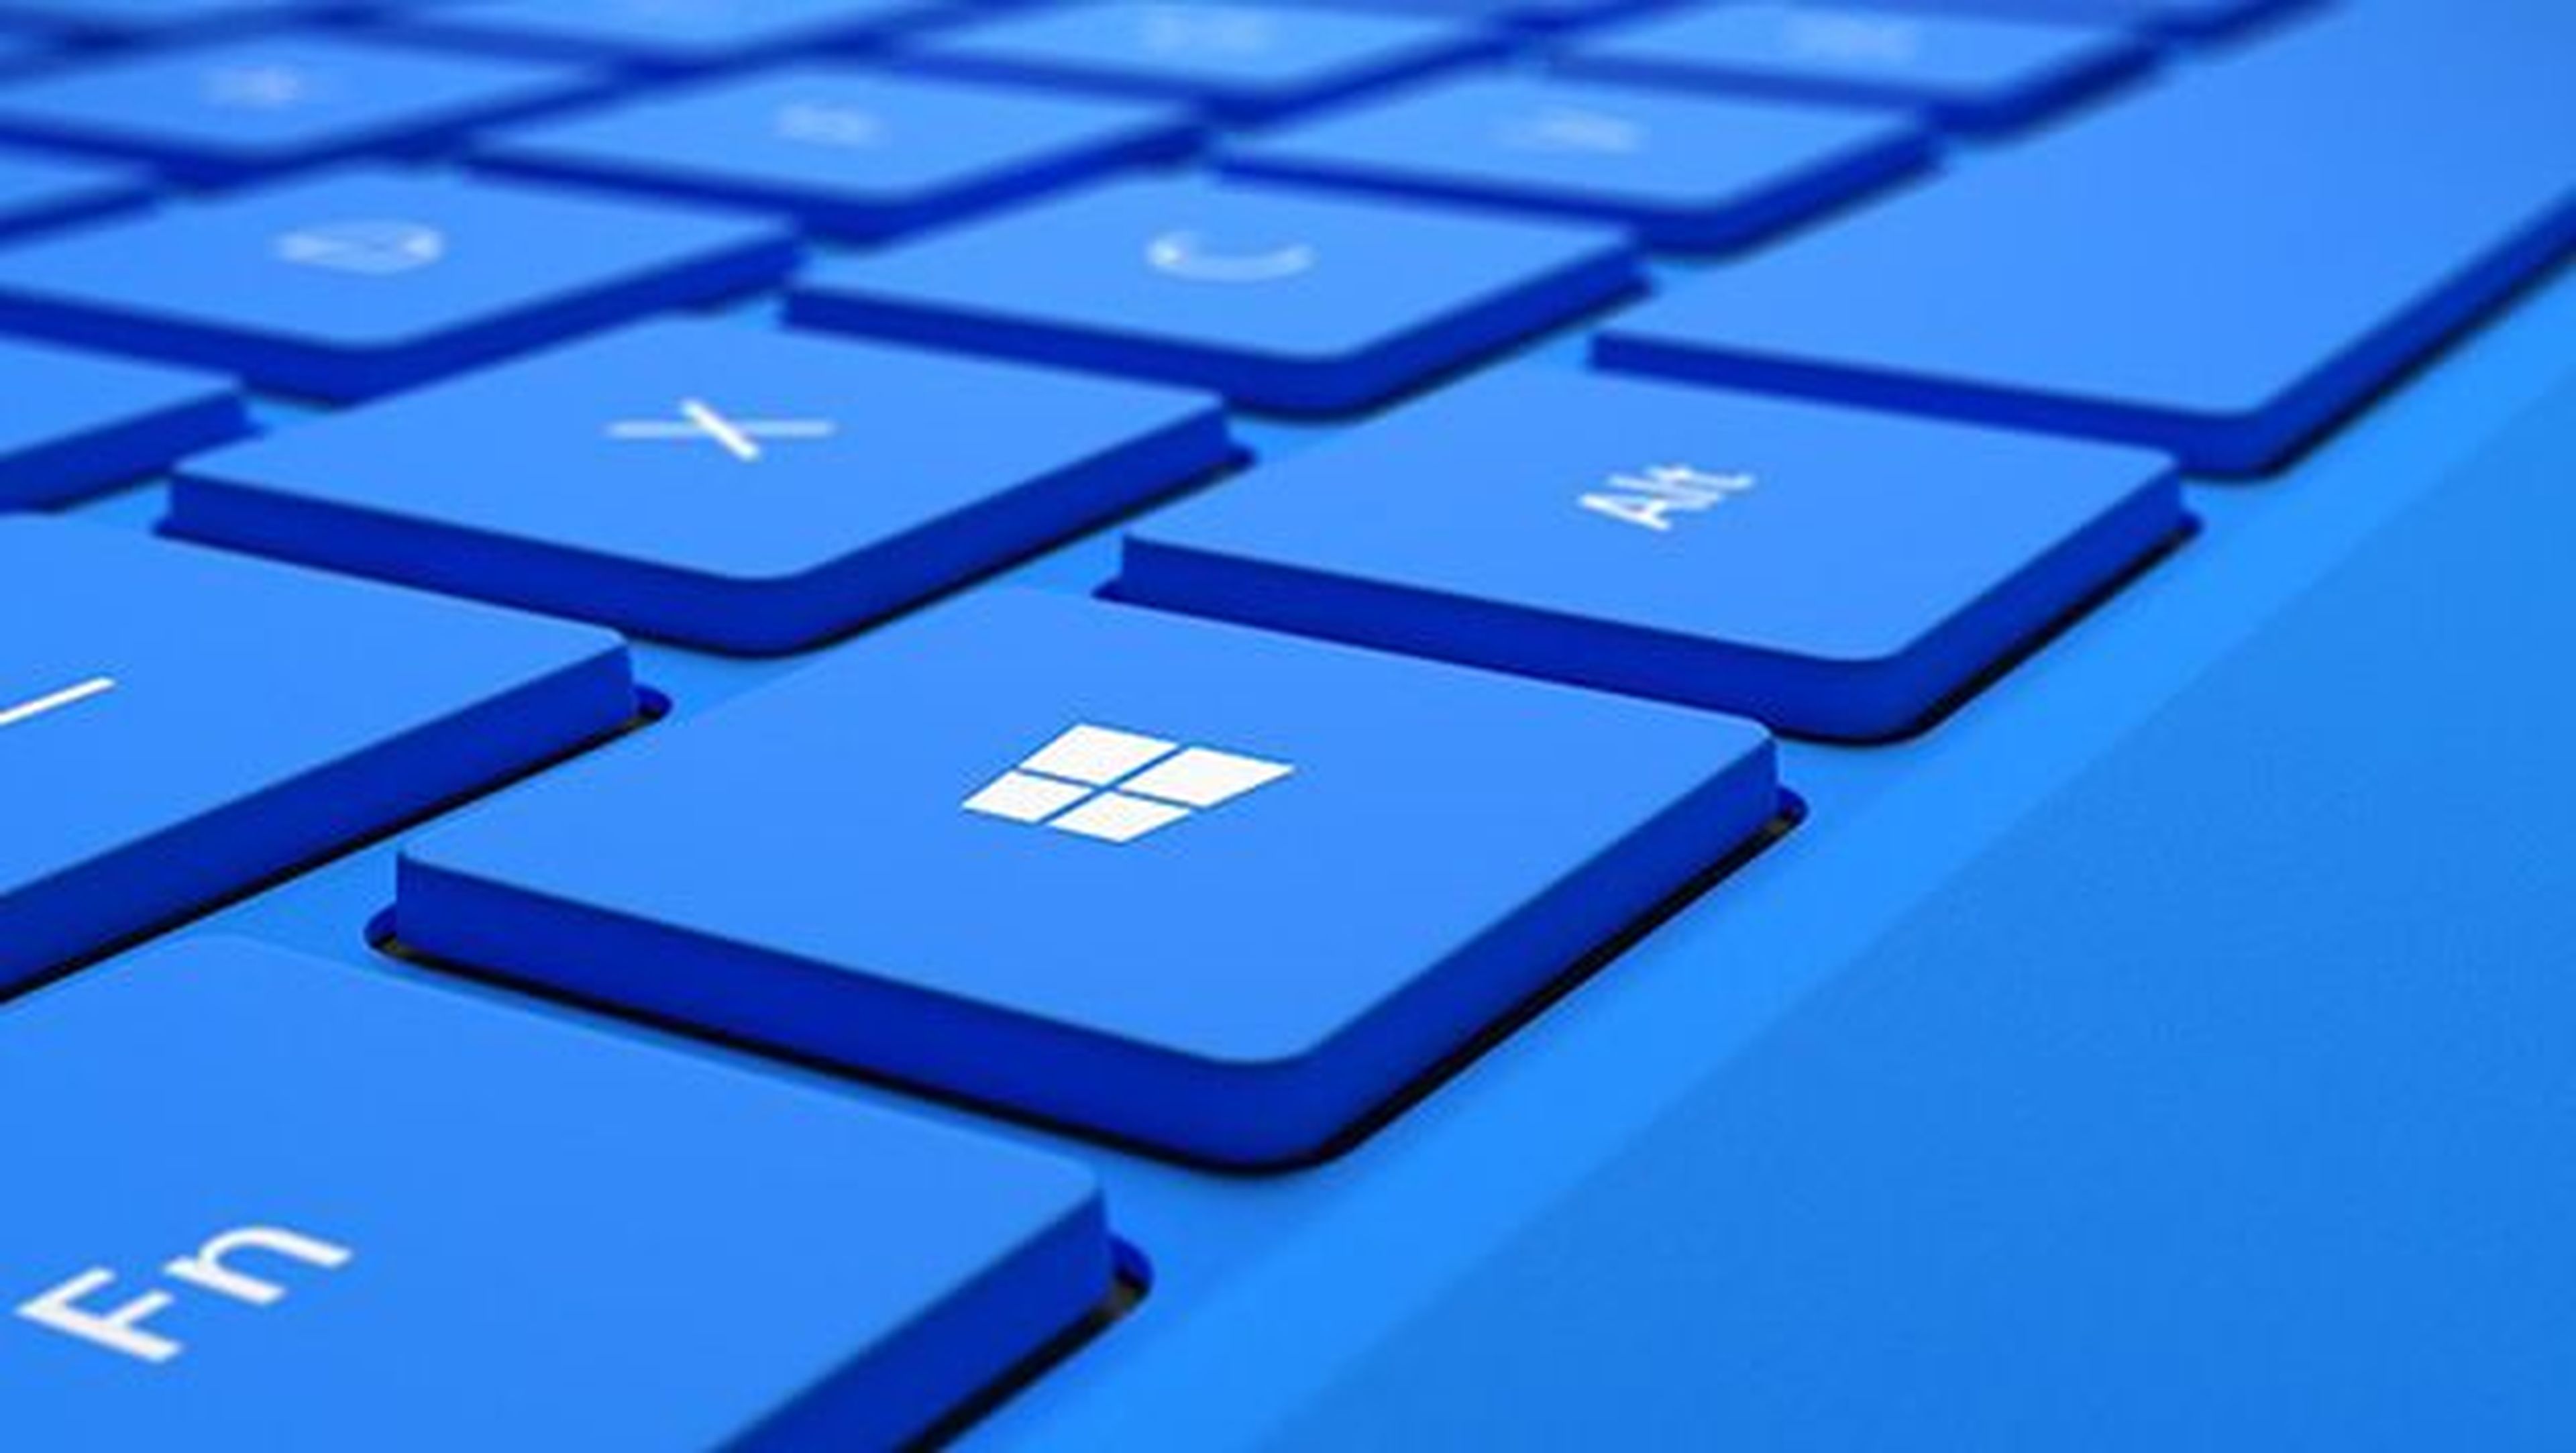 Podrás acceder a la fase beta de los programas de Windows 10.